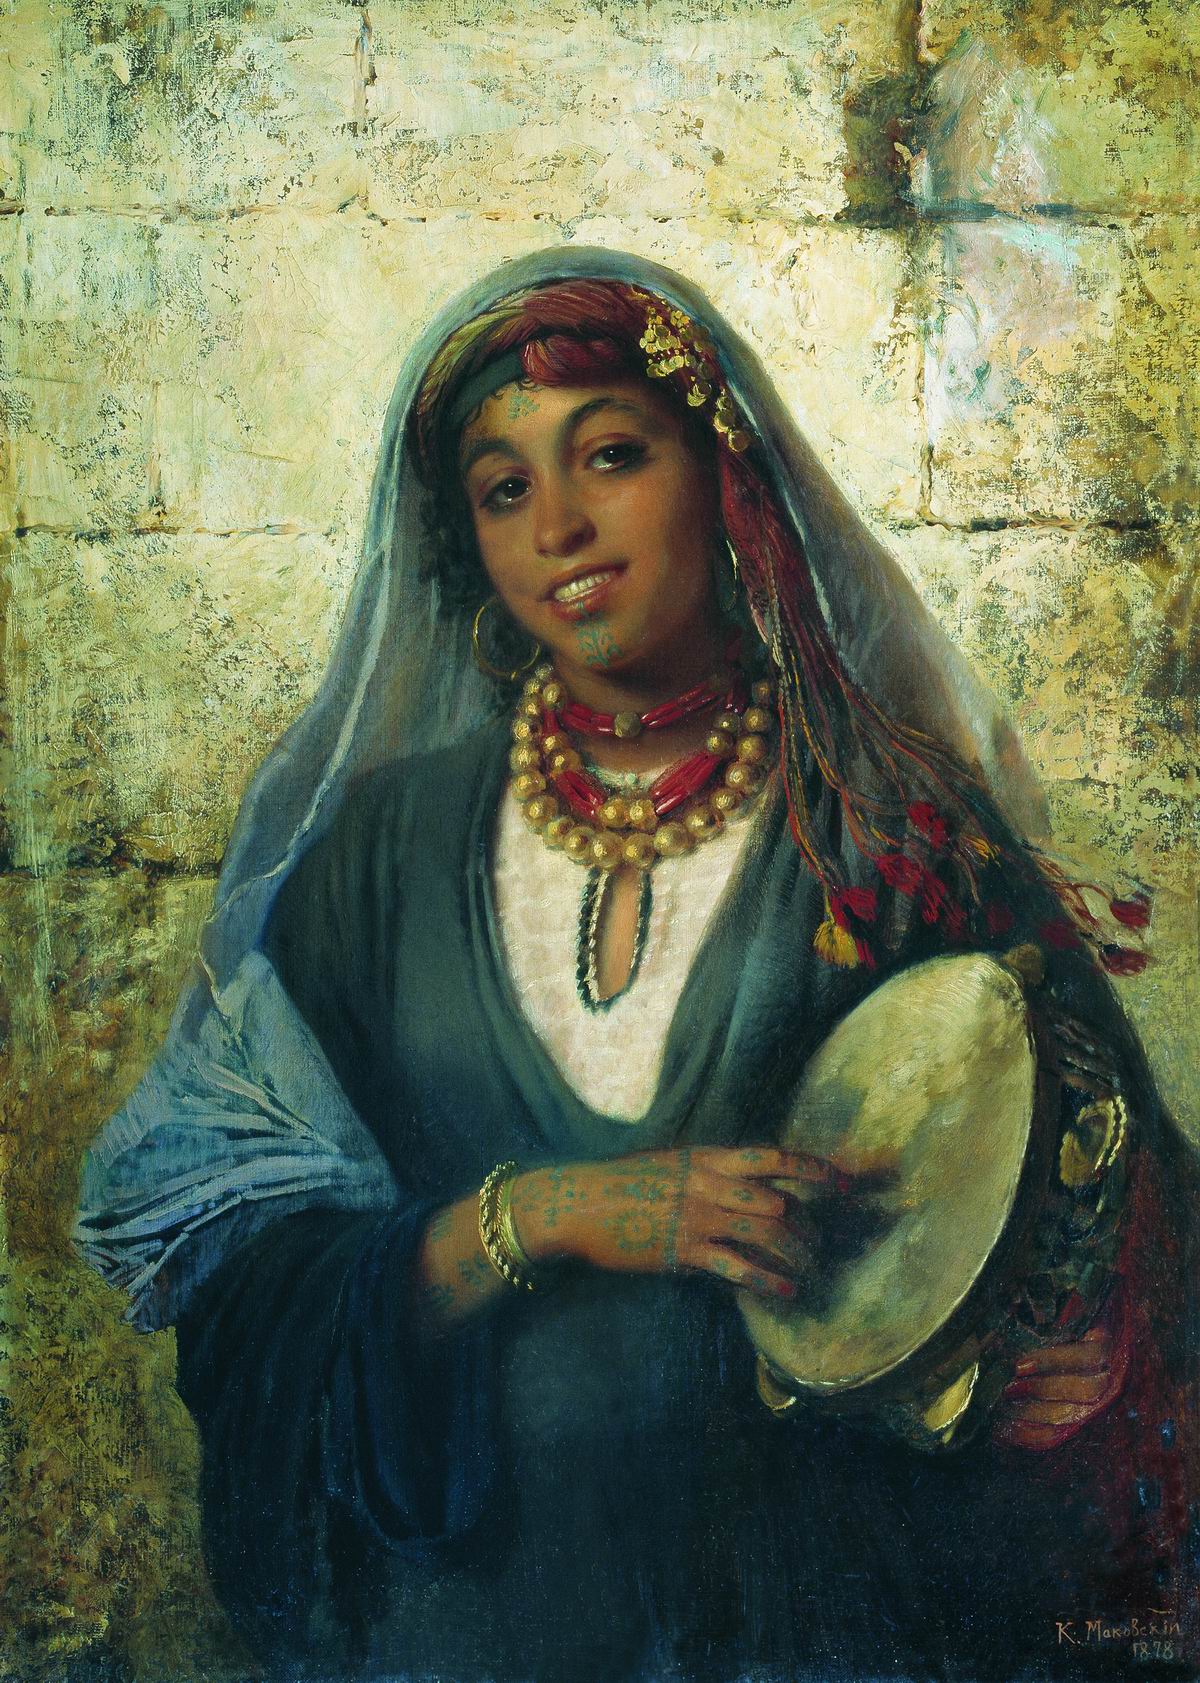 Маковский К.. Восточная женщина (Цыганка). 1878